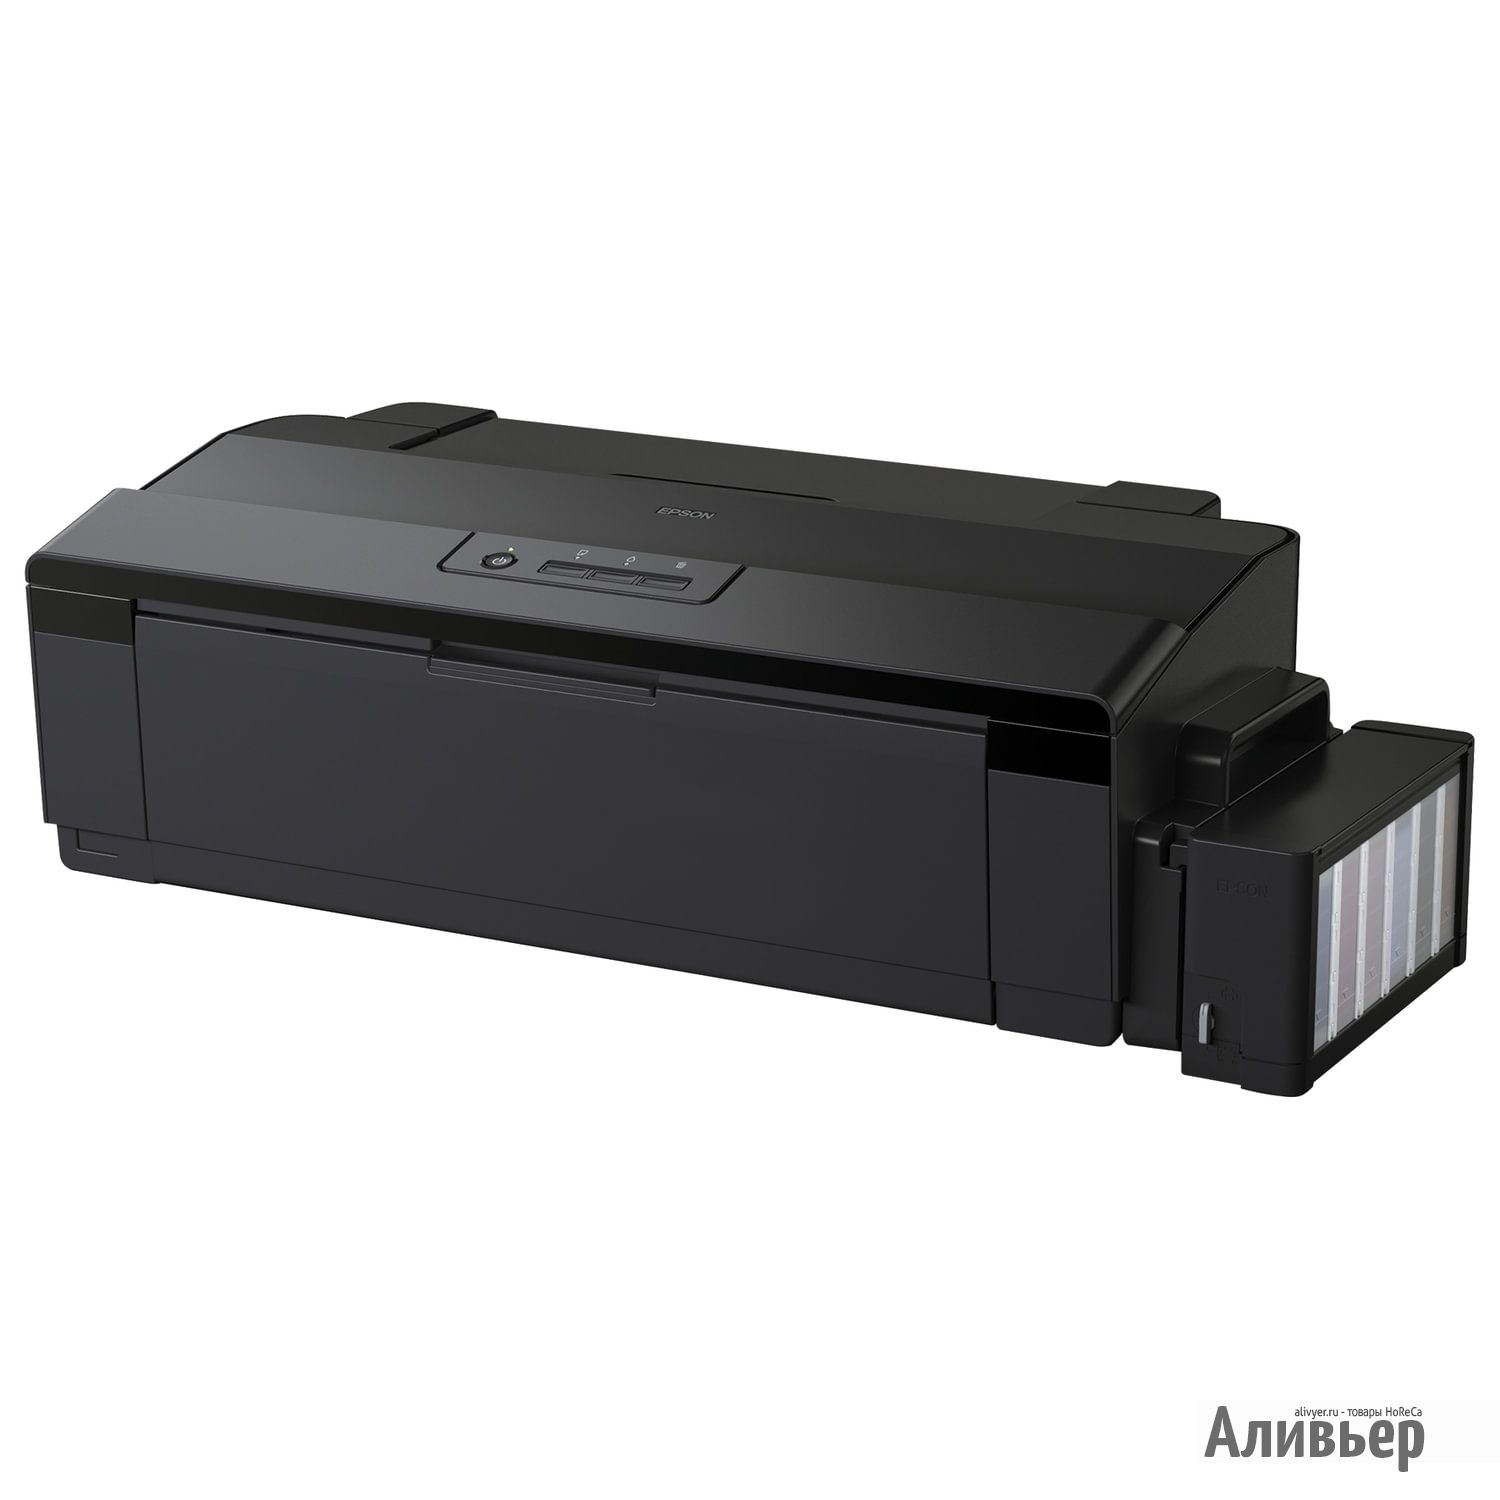 Epson 1800. Принтер струйный Epson l1300. Принтер Epson l1300 a3+. Принтер Epson l1300 c11cd81402. Принтер струйный Epson l1800.